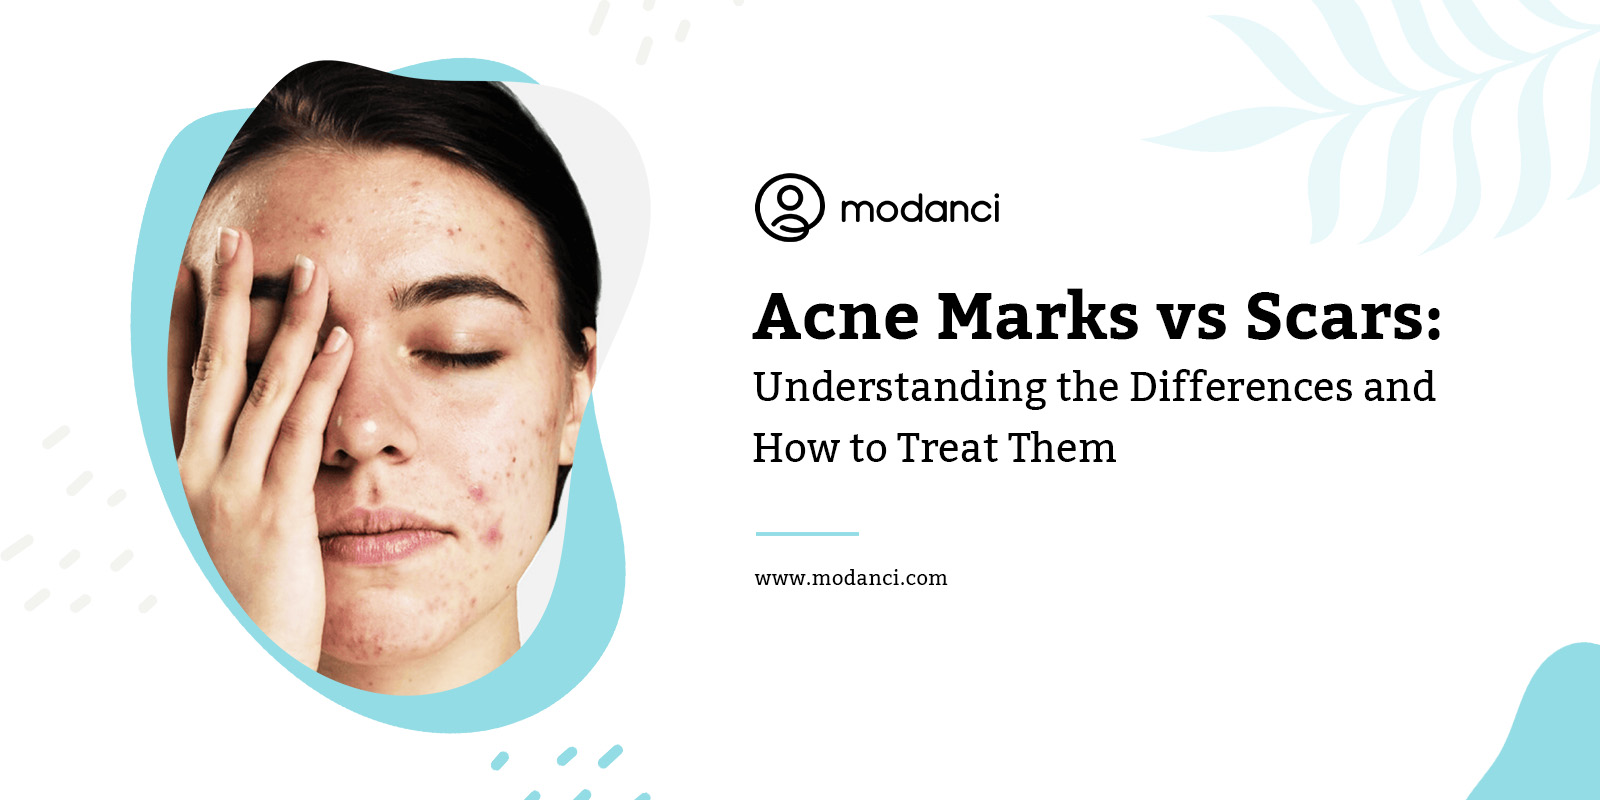 acne marks vs scars